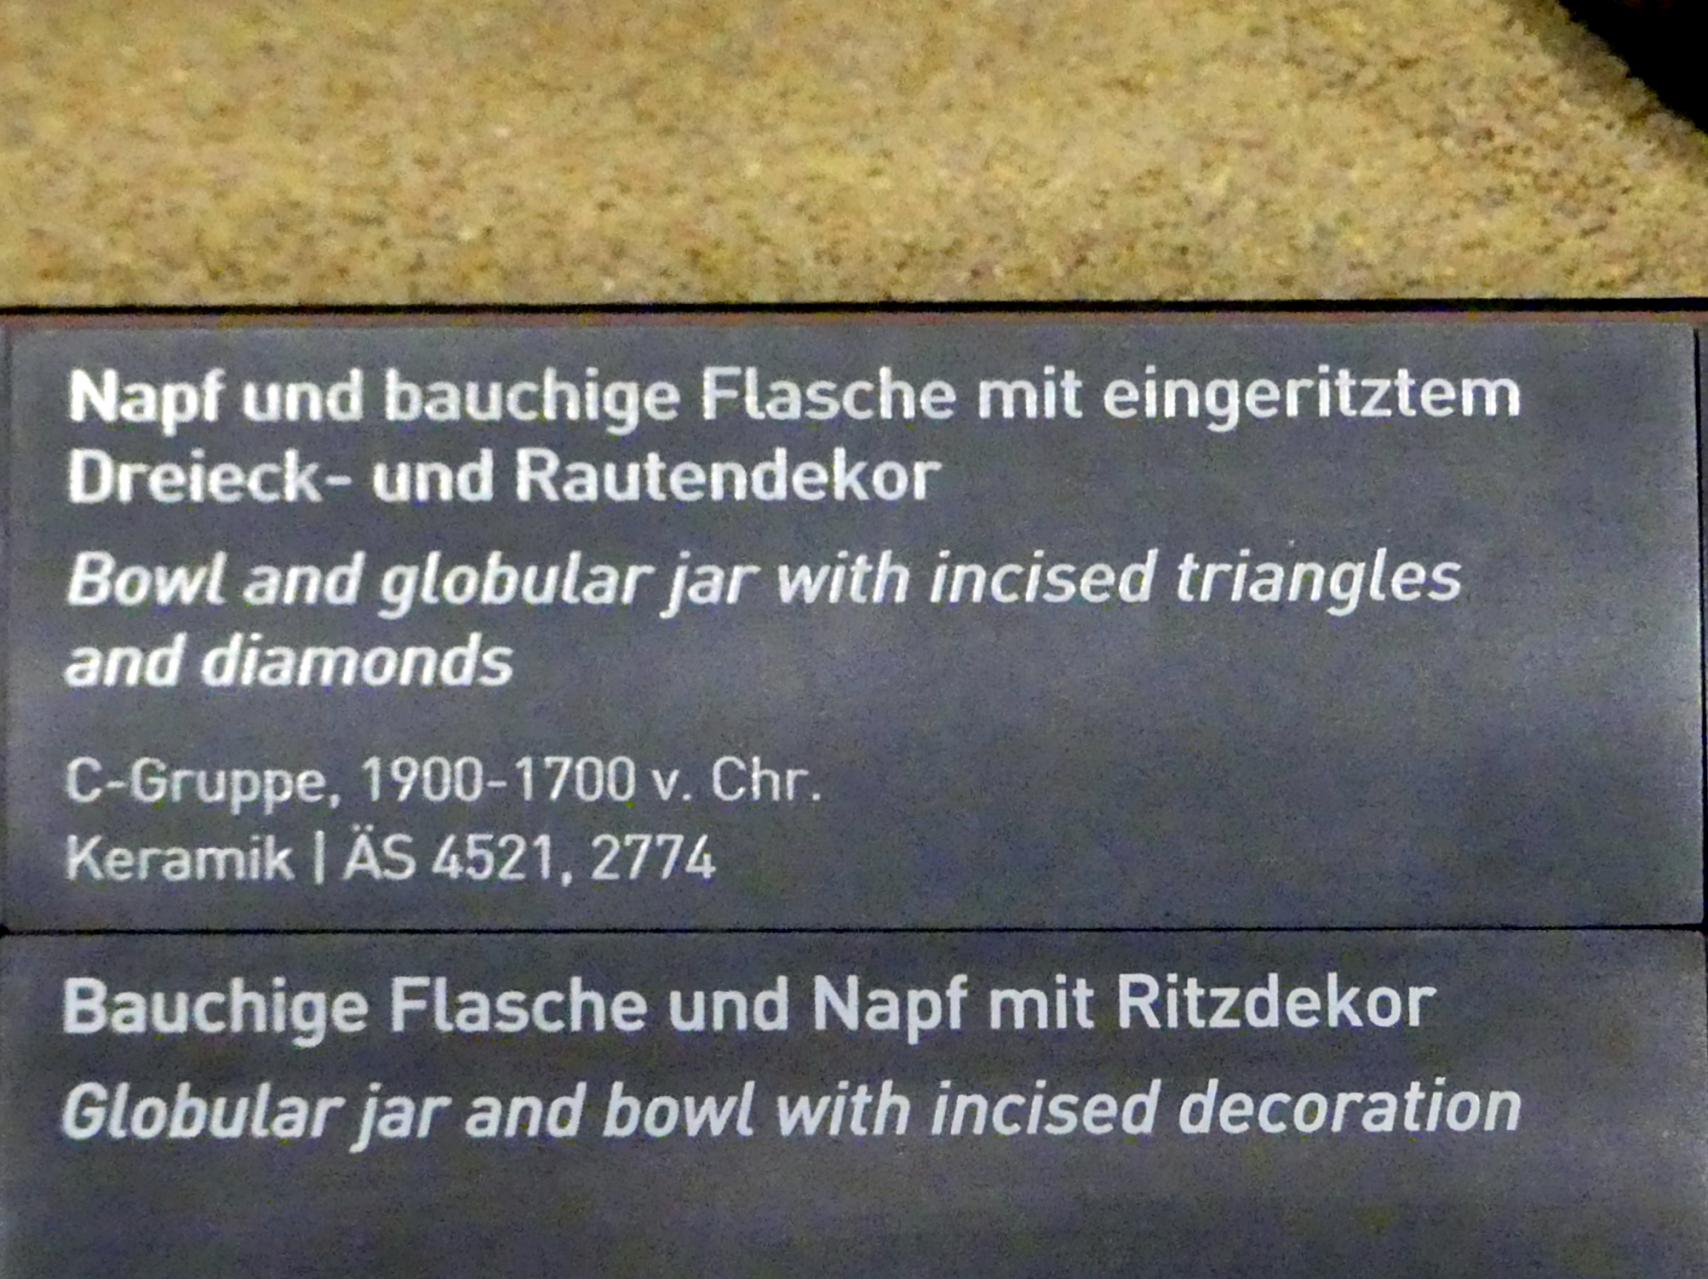 Bauchige Flasche mit eingeritztem Dreieck- und Rautendekor, C-Gruppe, 1900 - 1550 v. Chr., 1900 - 1700 v. Chr., Bild 2/2